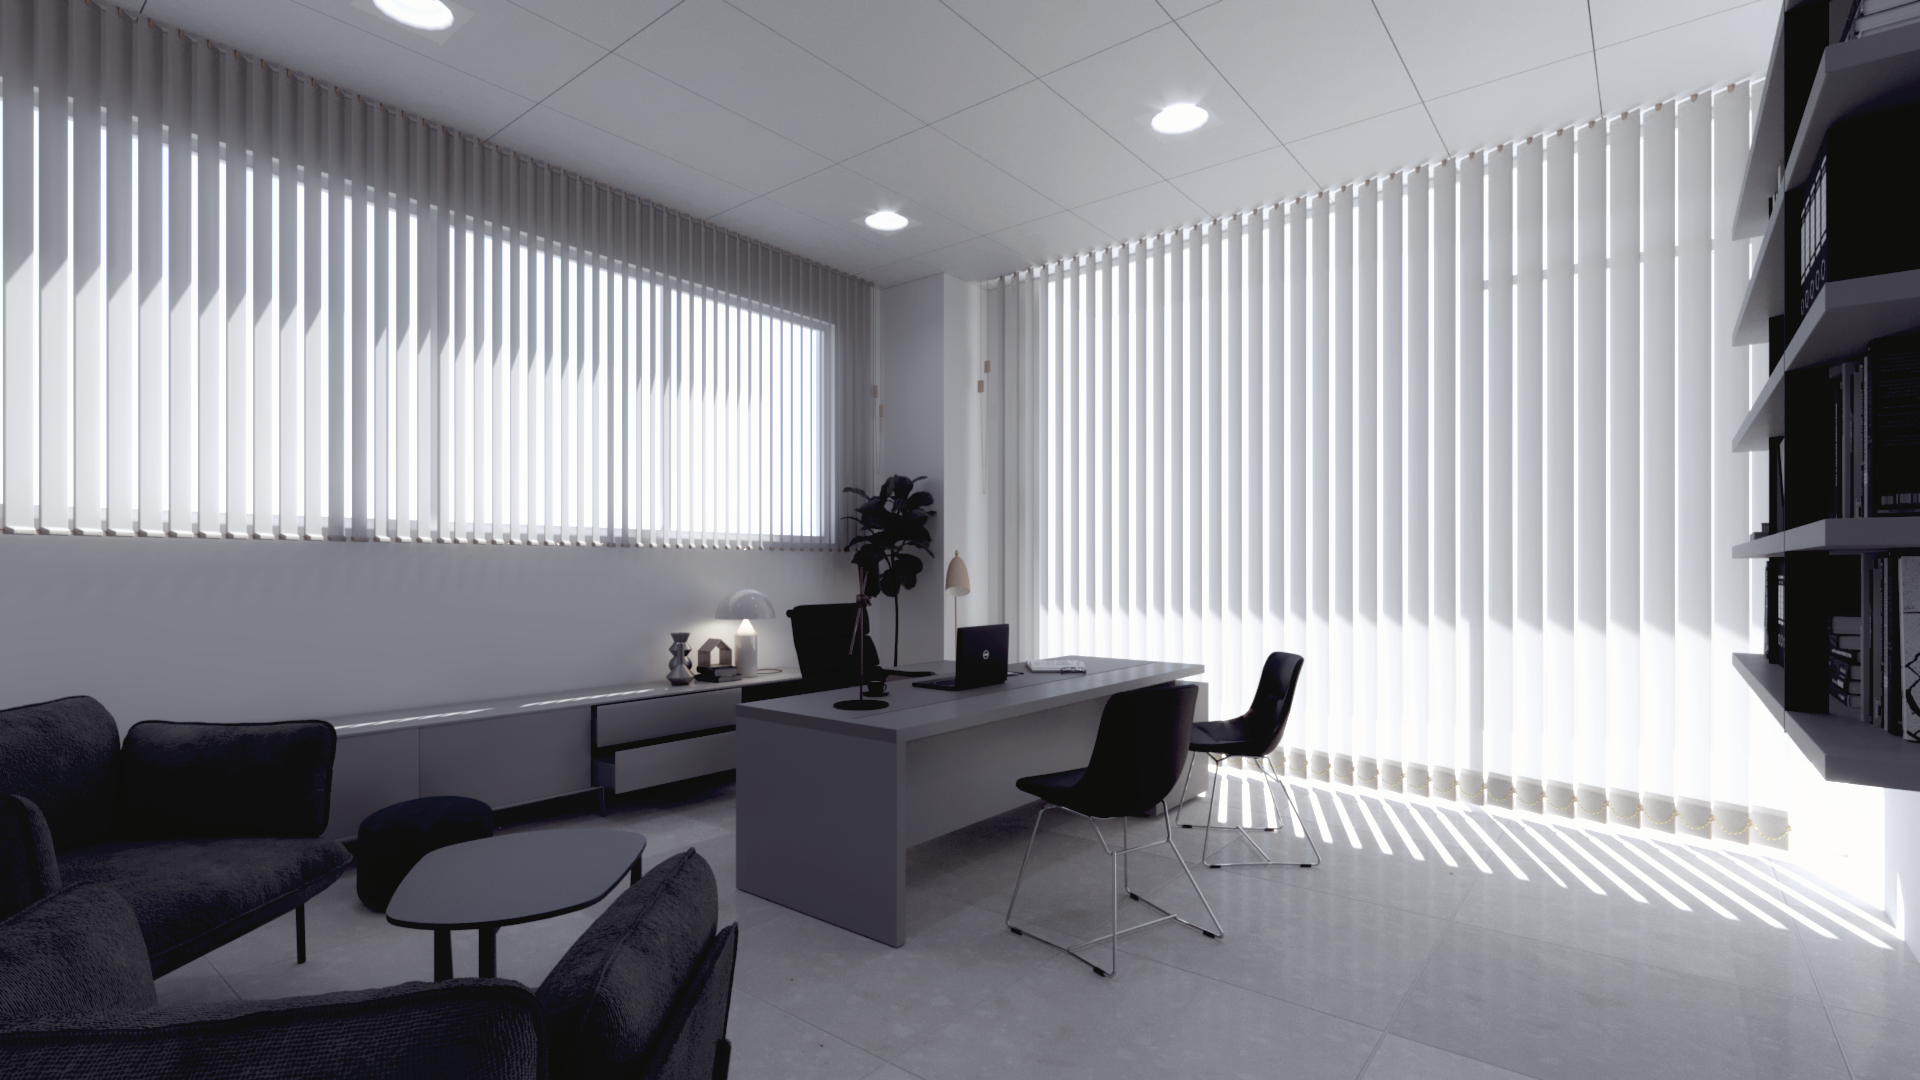 Ideazione e rendering 3D per arredamenti uffici aziendali